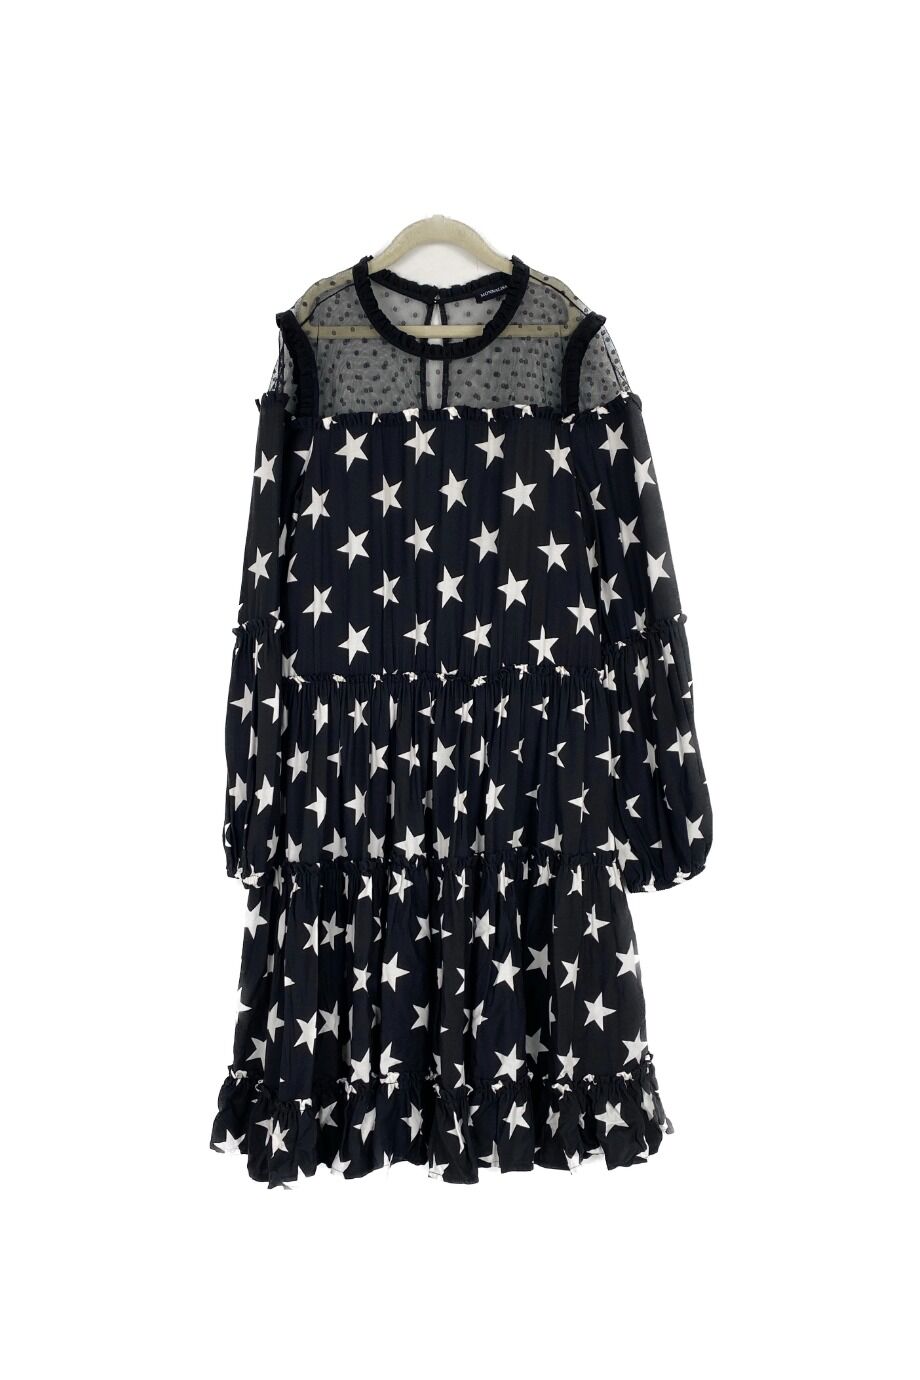 image 1 Детское платье черного цвета со звездами